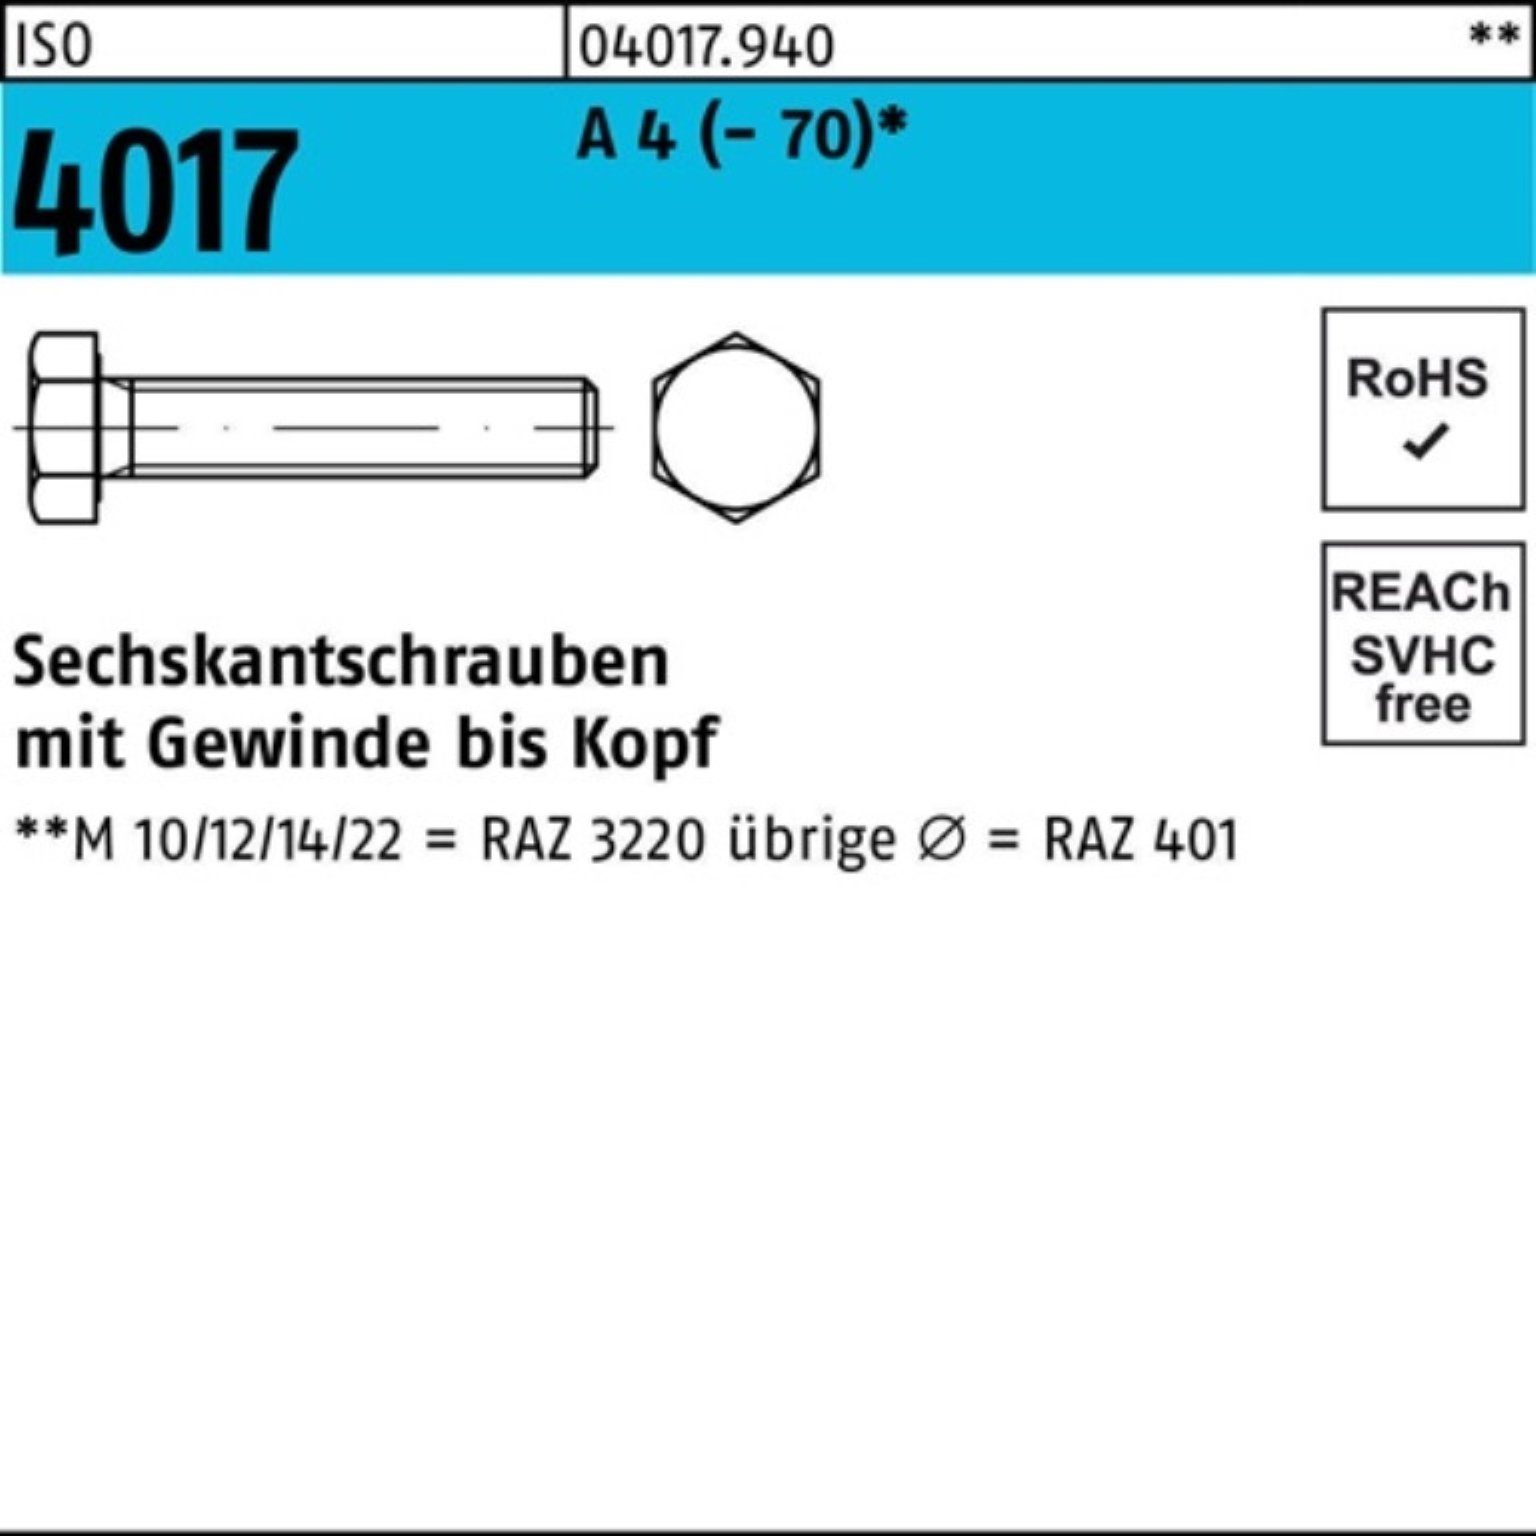 ISO Bufab 401 140 1 4 VG 100er ISO Sechskantschraube A Sechskantschraube M30x Pack 4017 Stück